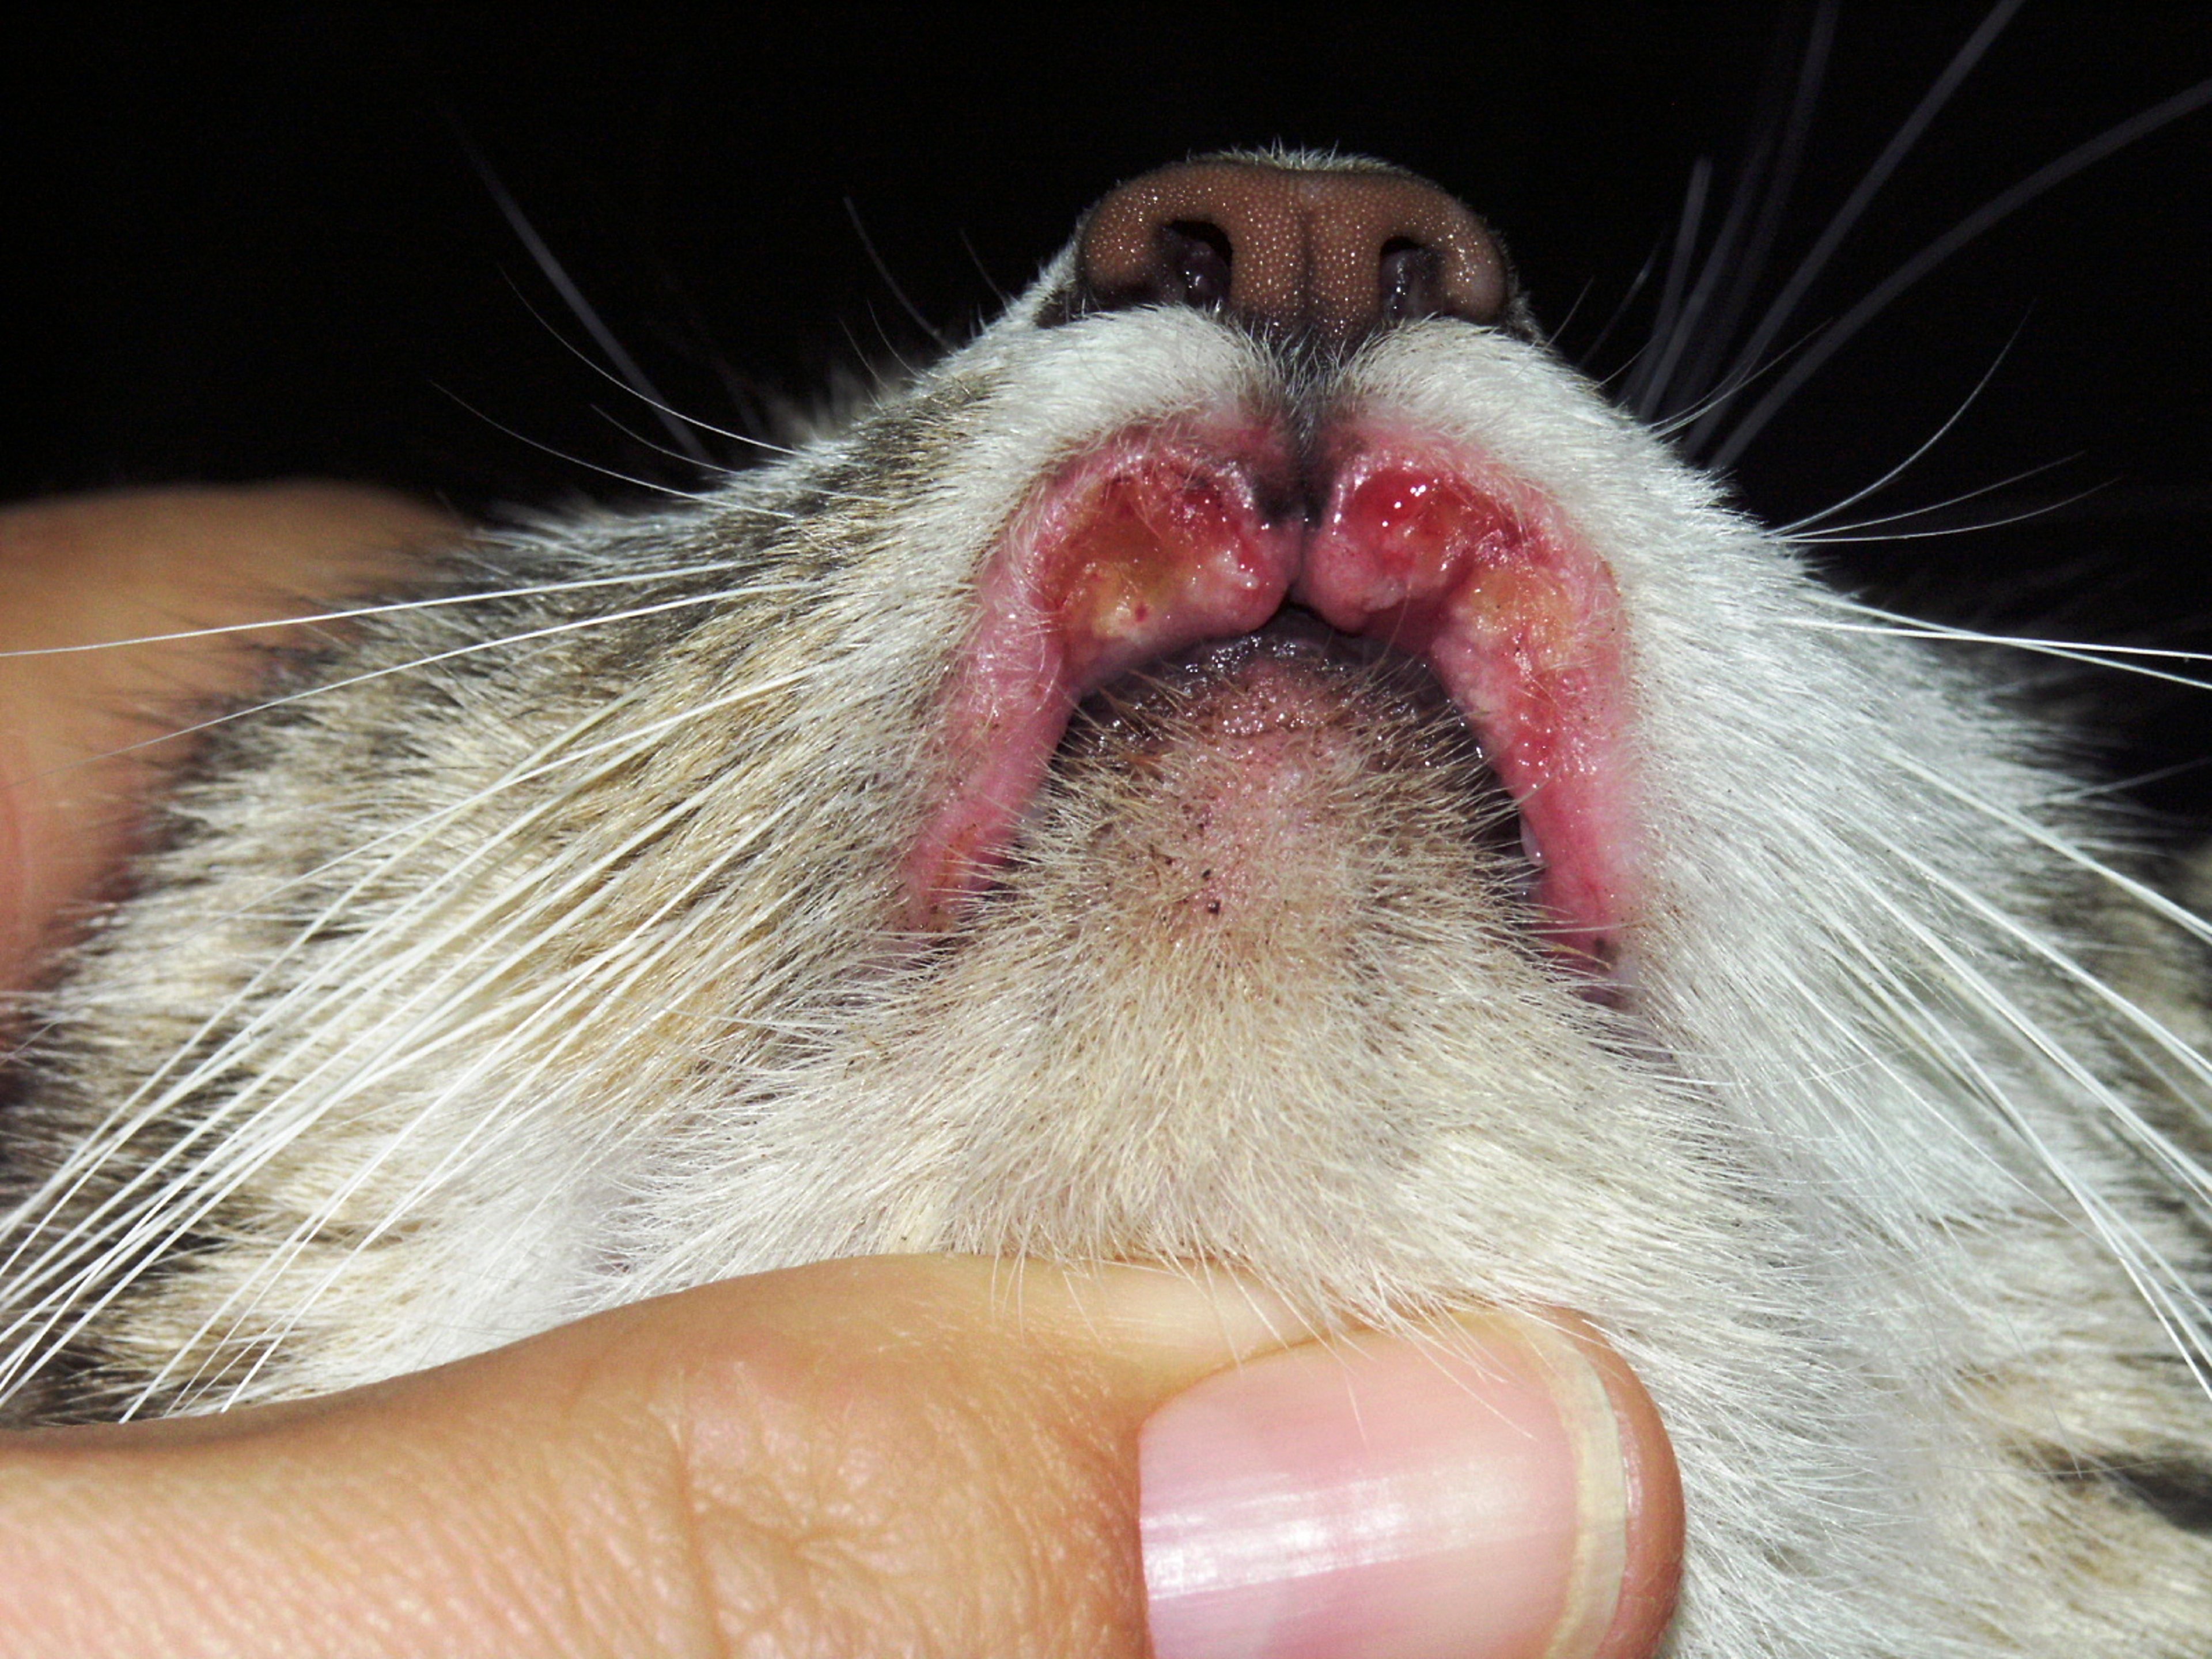 Lip ulcer, cat